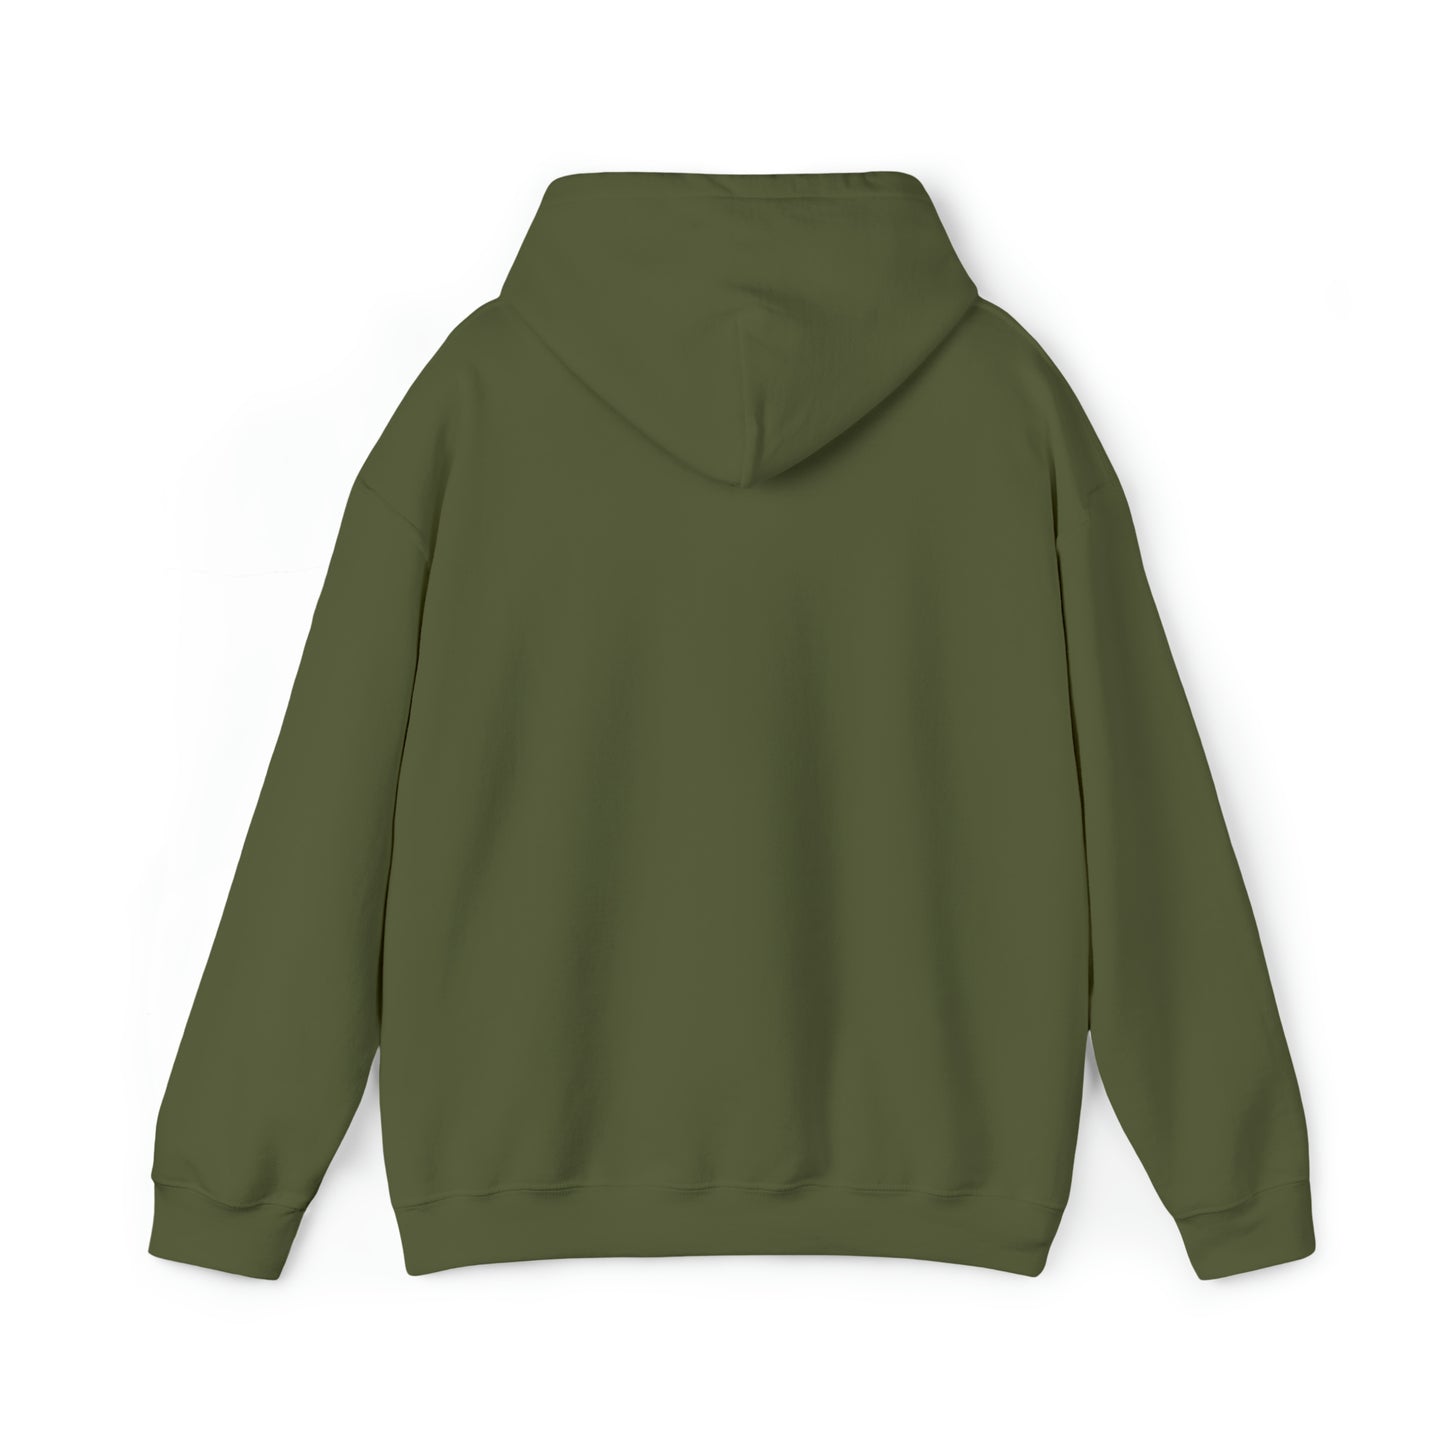 Salem Hoodie | Unisex Heavy Blend™ Hooded Sweatshirt